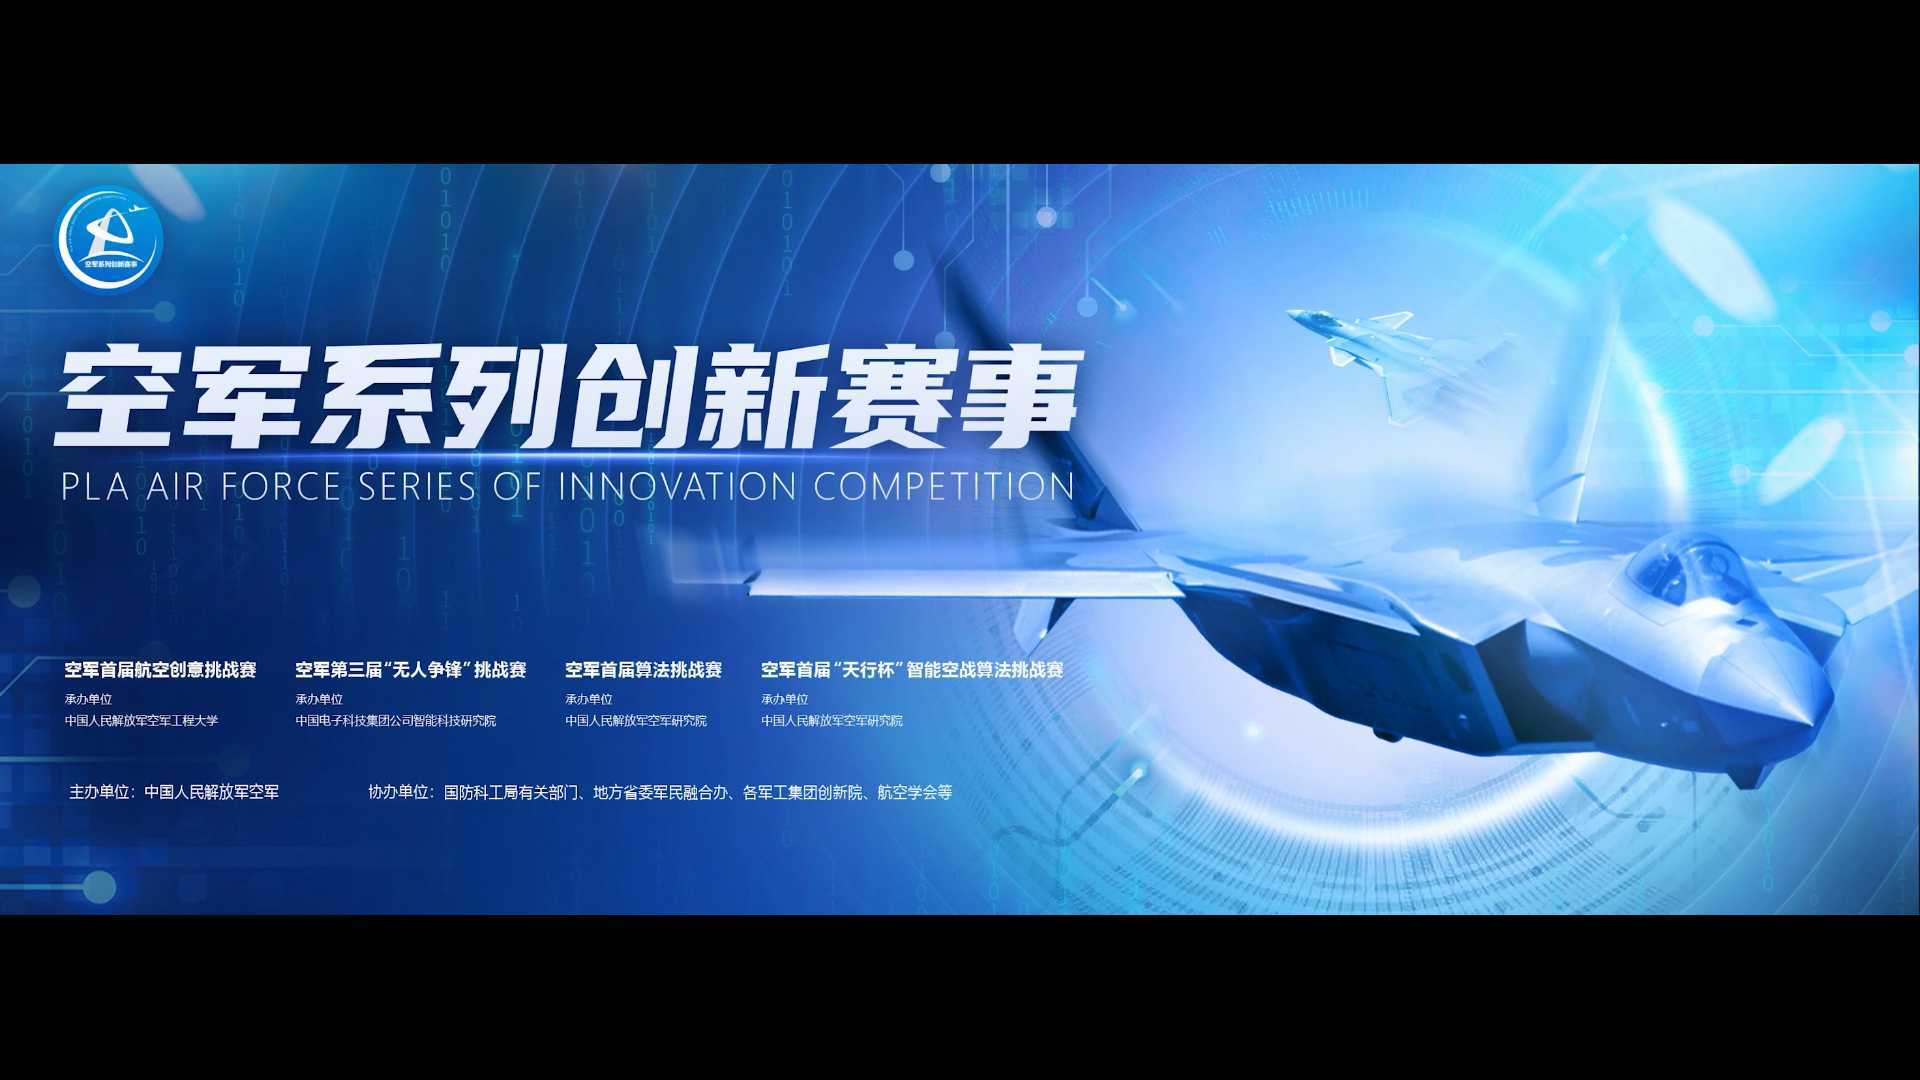 中国空军《空军系列创新大赛》宣传片